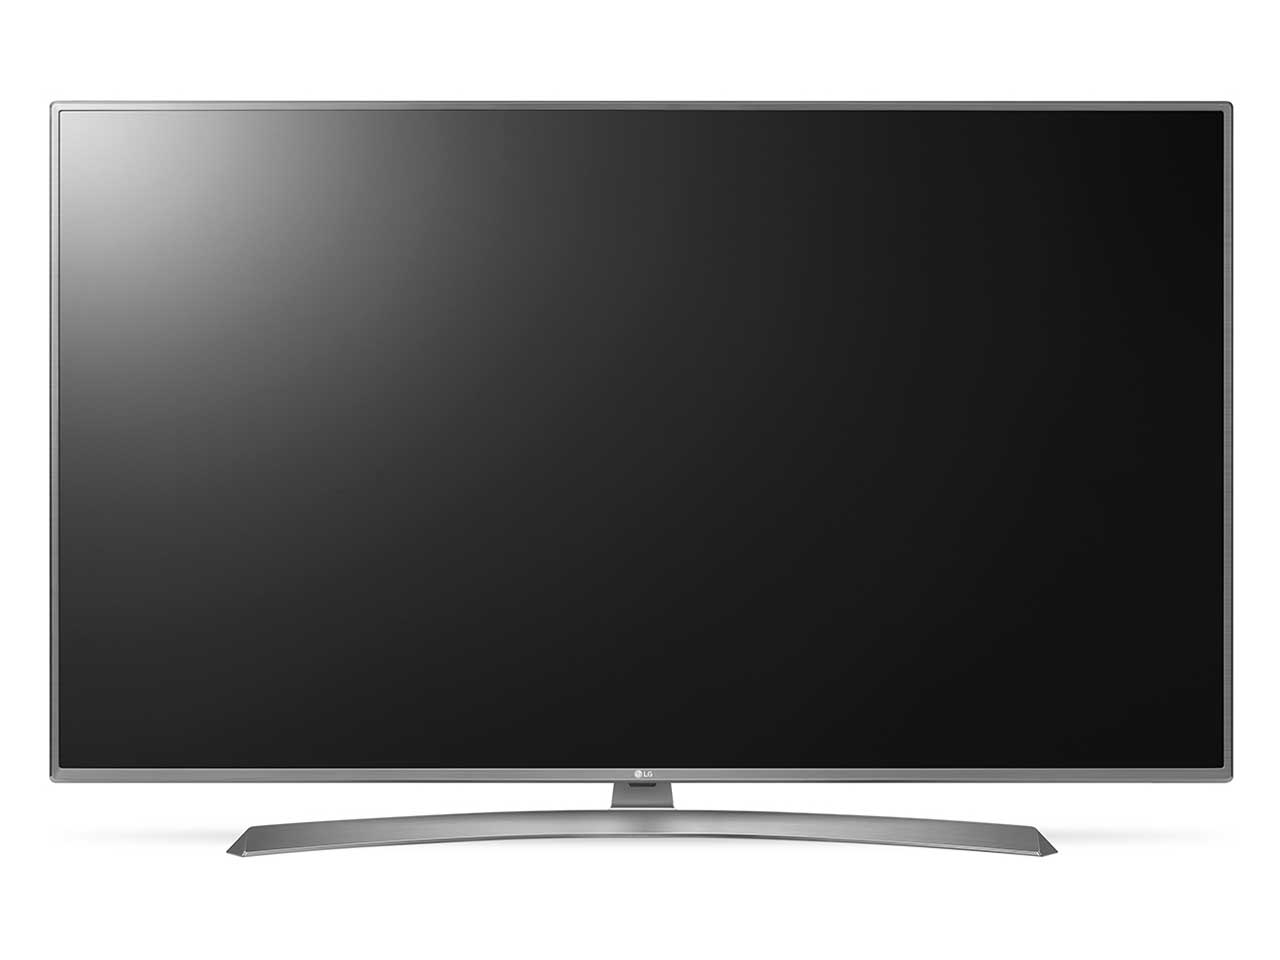 壁掛け金具対応検索 LGエレクトロニクス・ジャパン 55インチ液晶テレビサイズ一覧 テレビアクセサリー市場